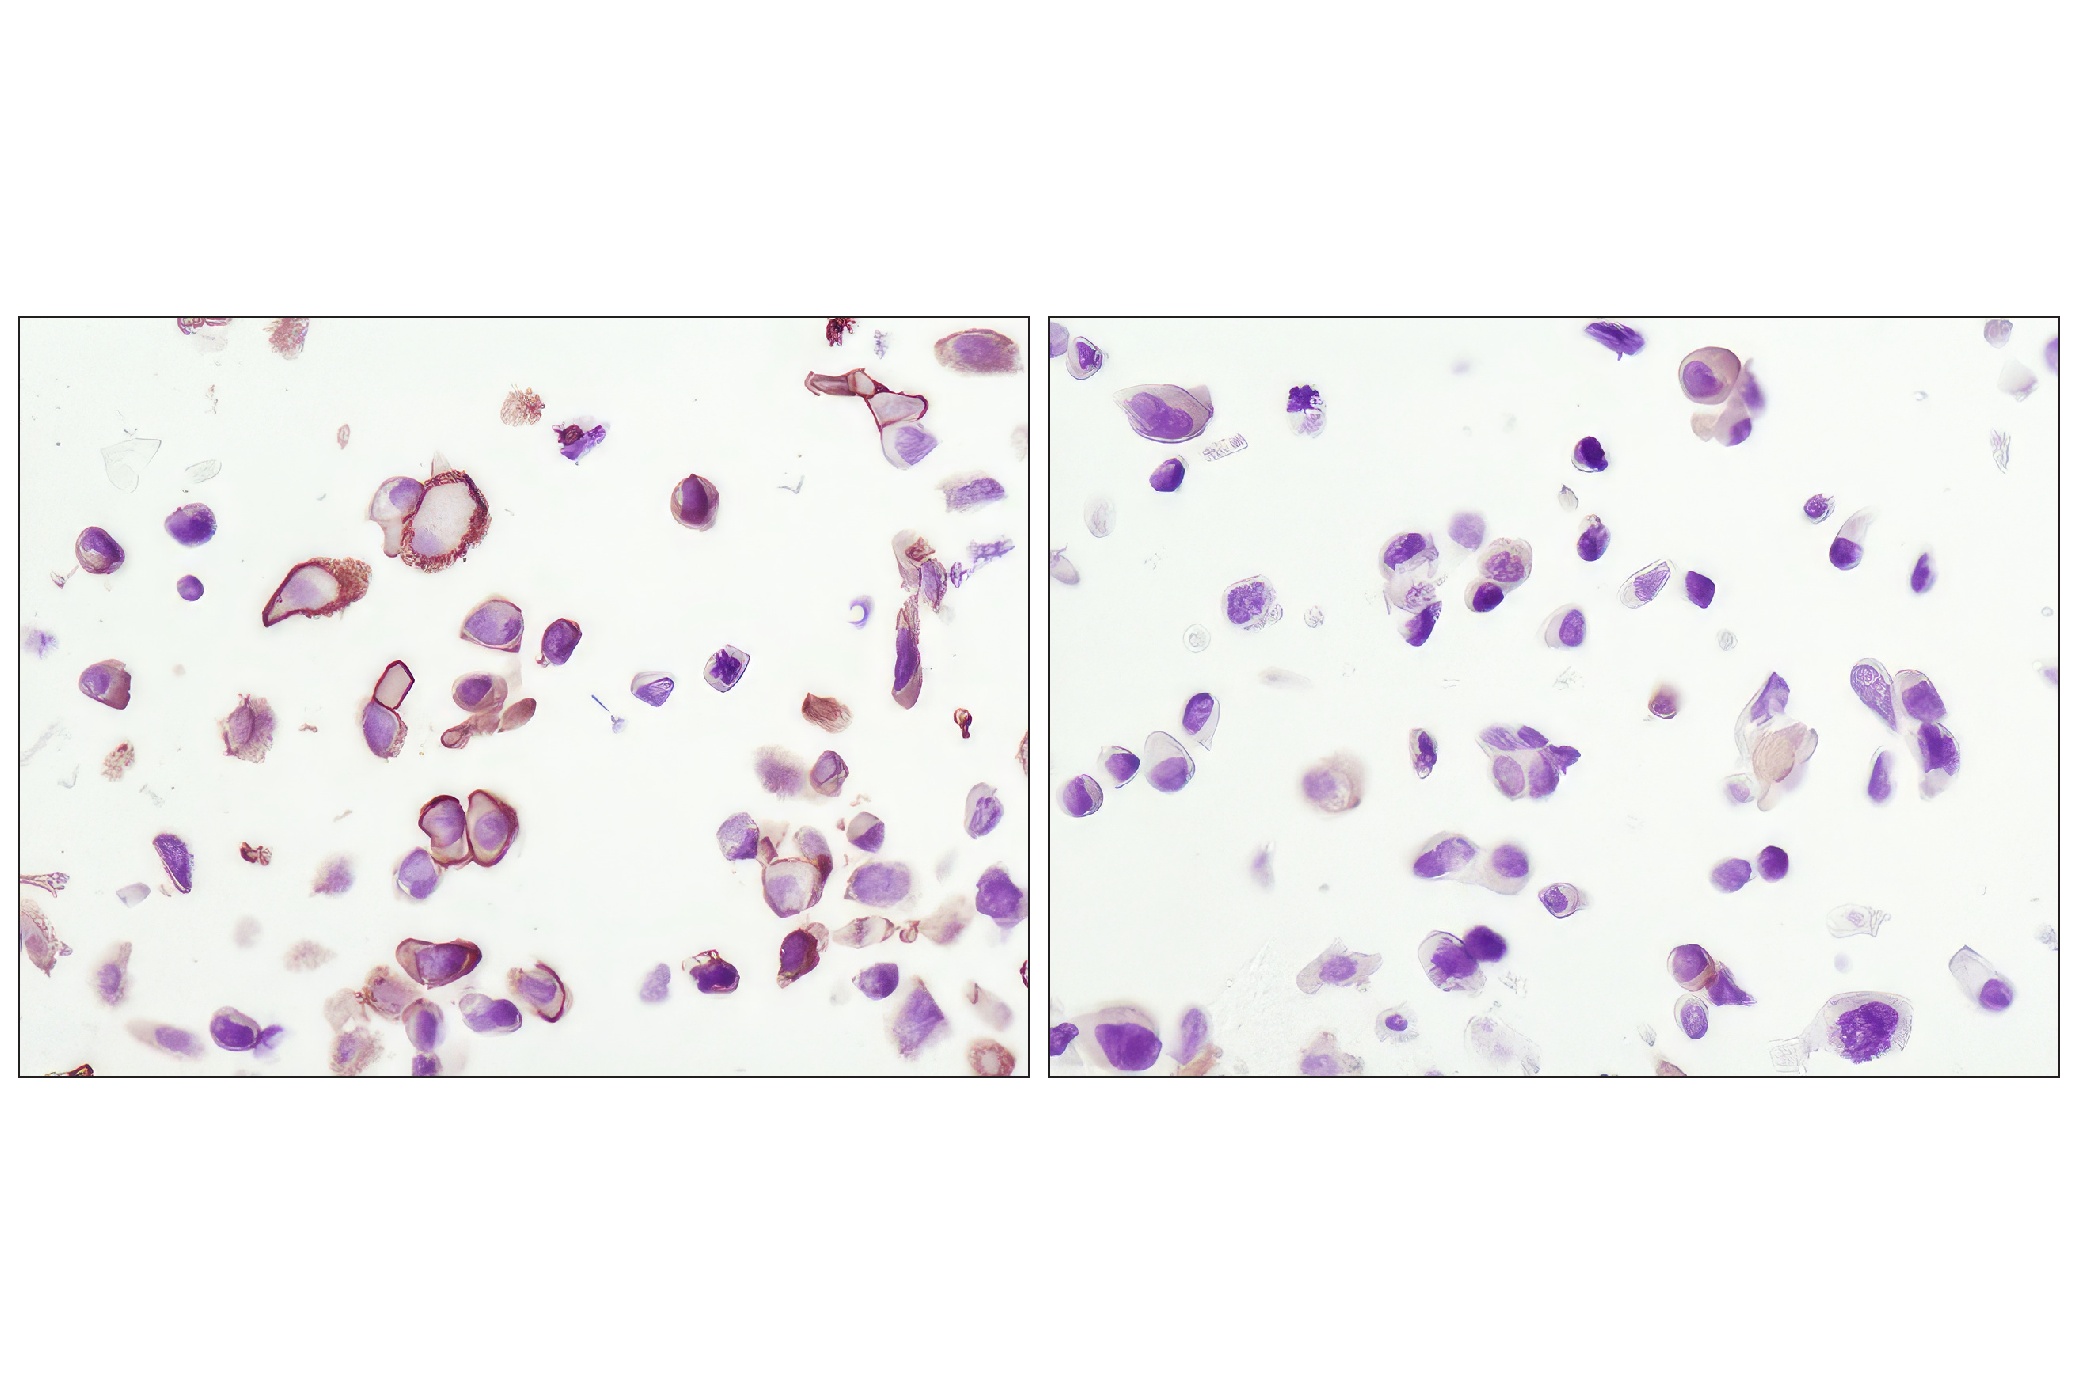  Image 25: AS160 Signaling Antibody Sampler Kit